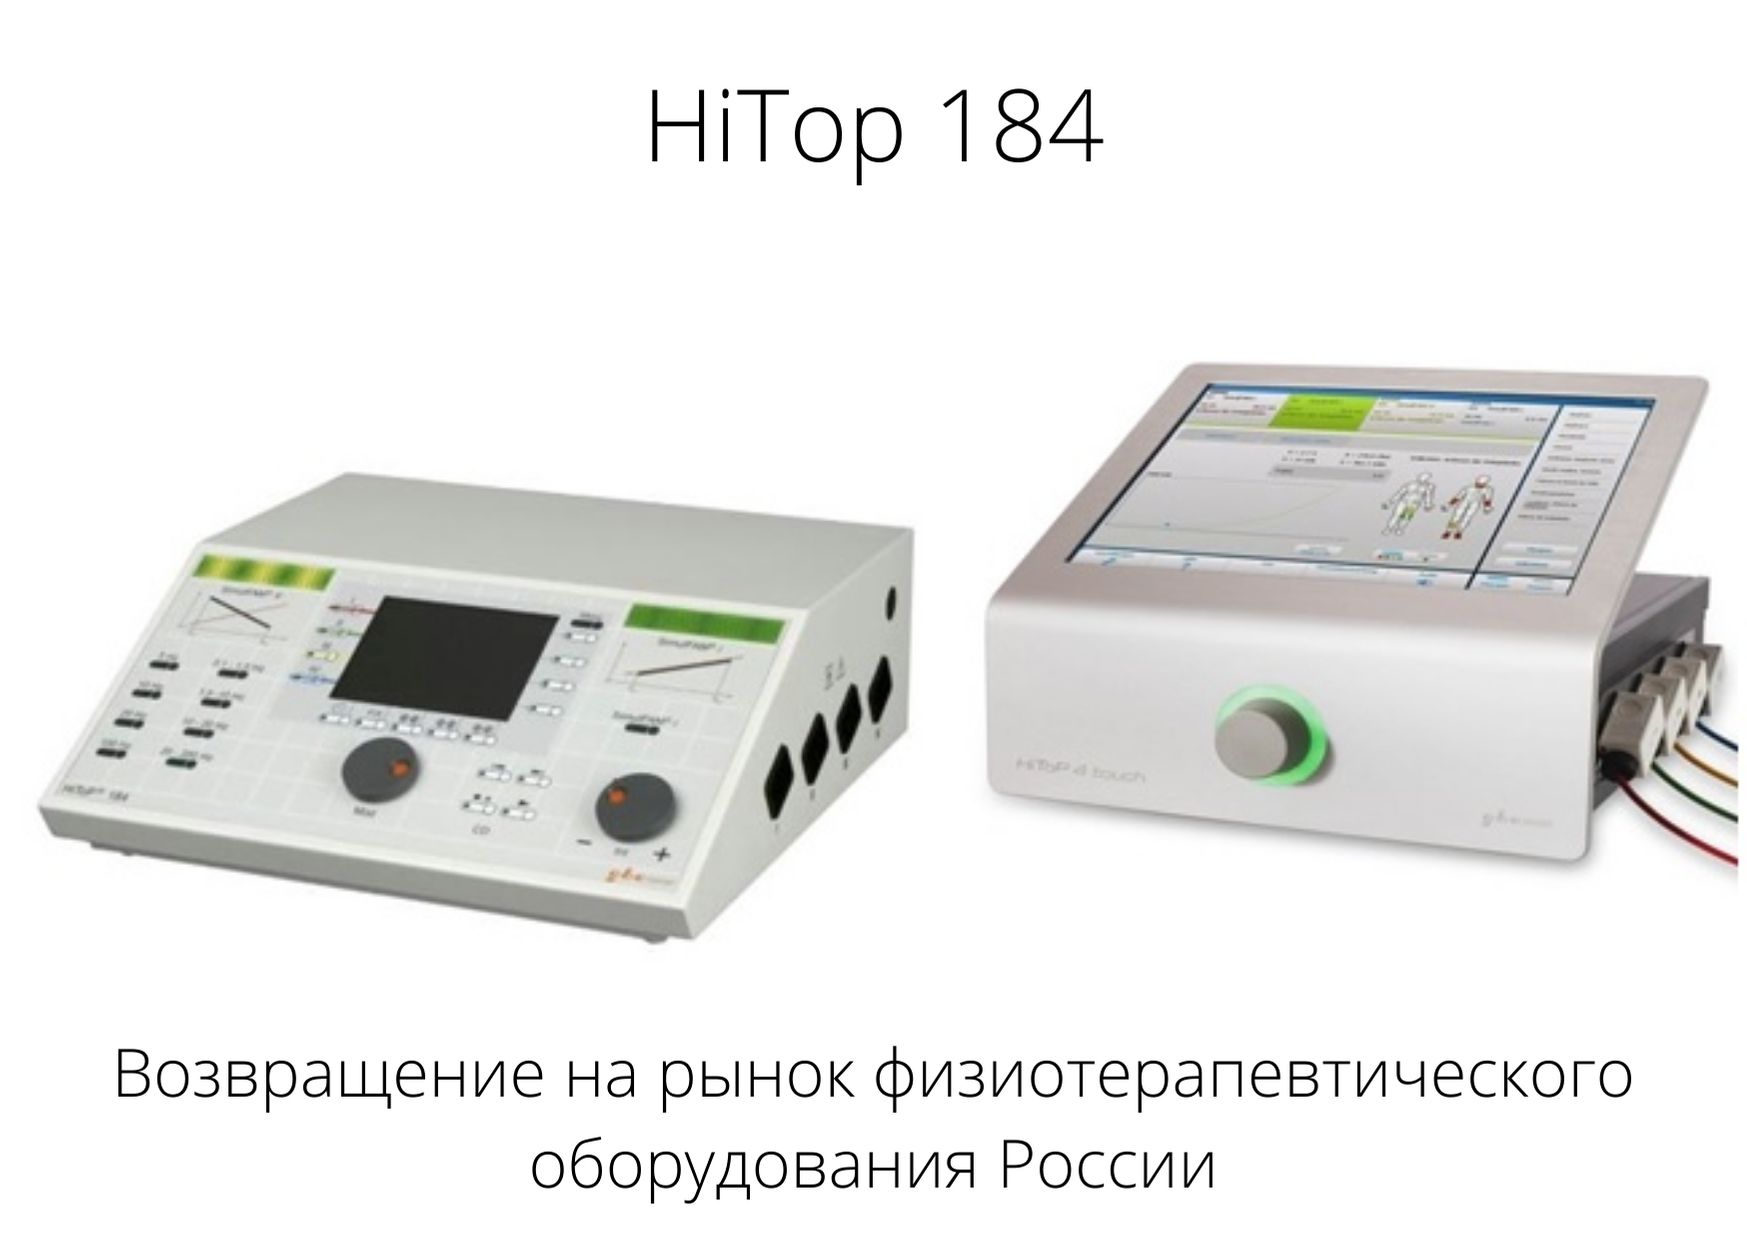 Возвращение легендарного аппарата высокотоновой терапии HiTop 184 на рынок физиотерапевтического оборудования.